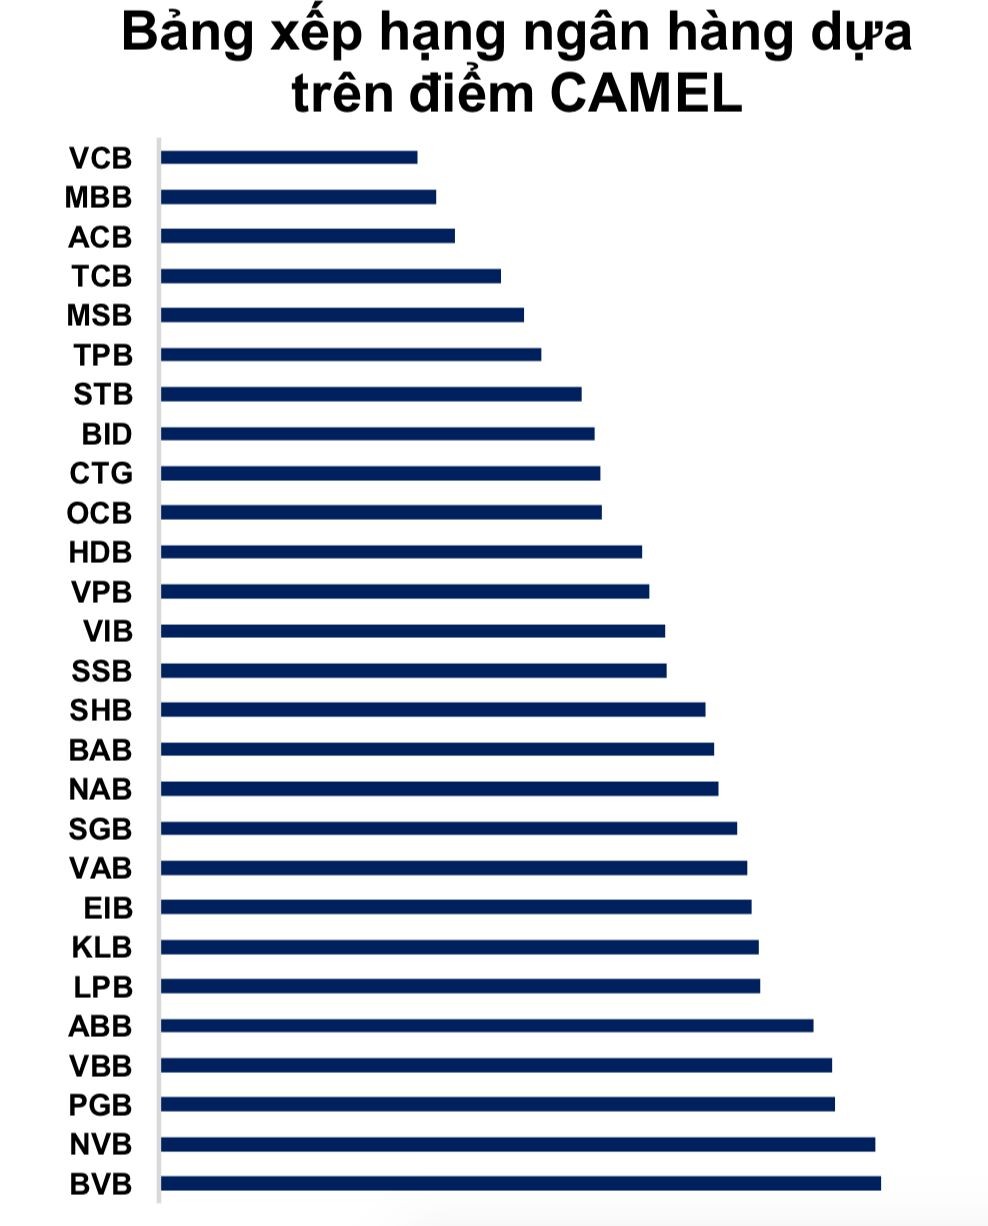 Bảng xếp hạng 27 ngân hàng Việt theo mô hình Camel